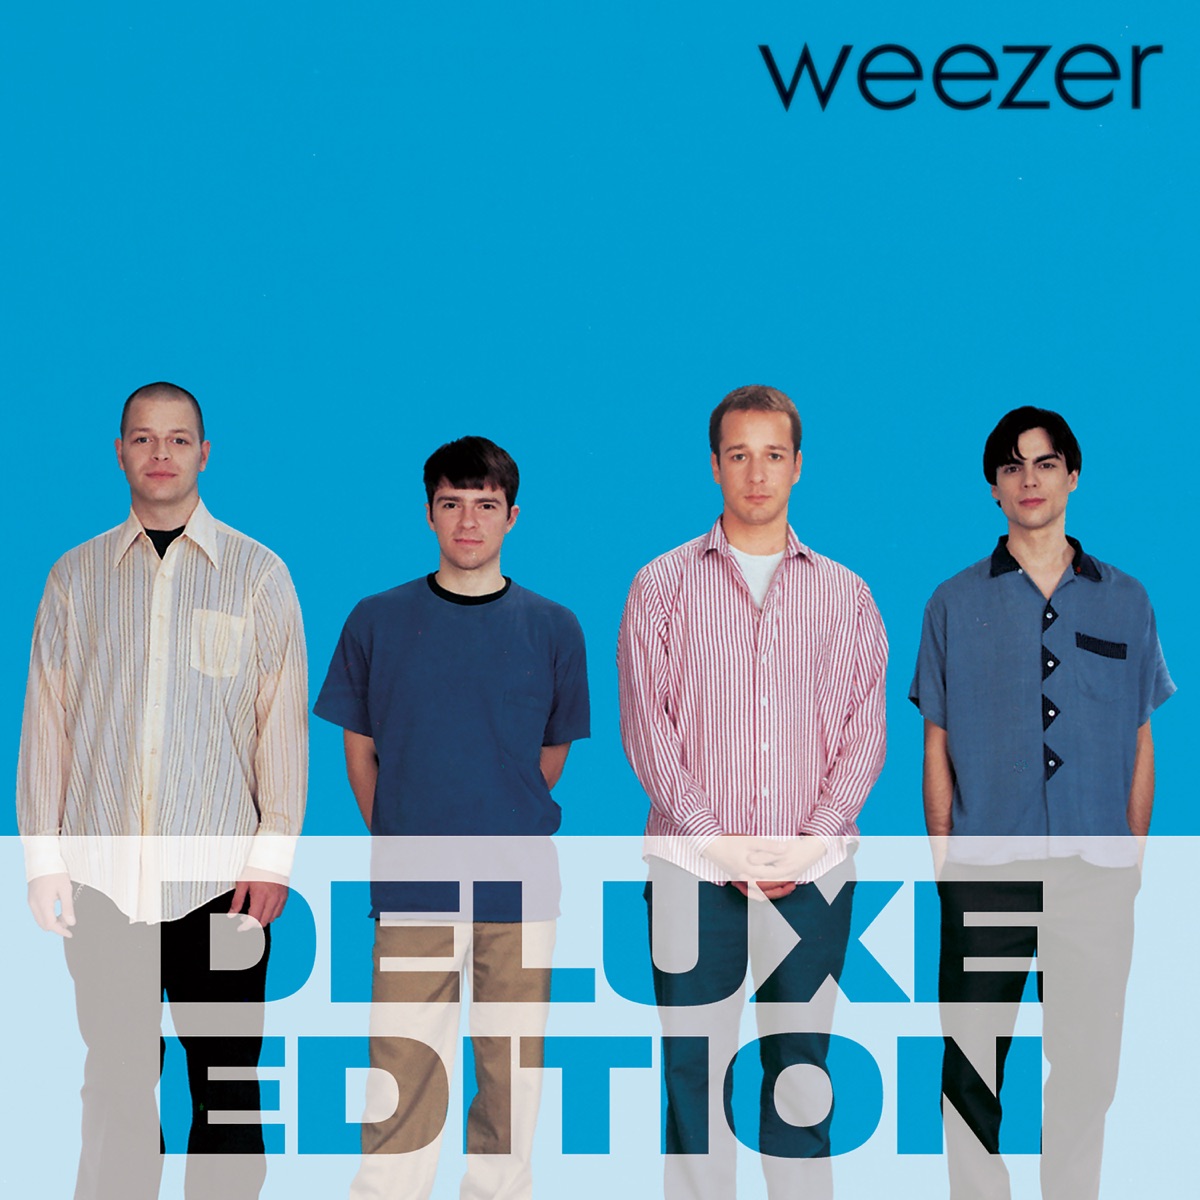 Weezer (Deluxe Edition) - Album by Weezer - Apple Music